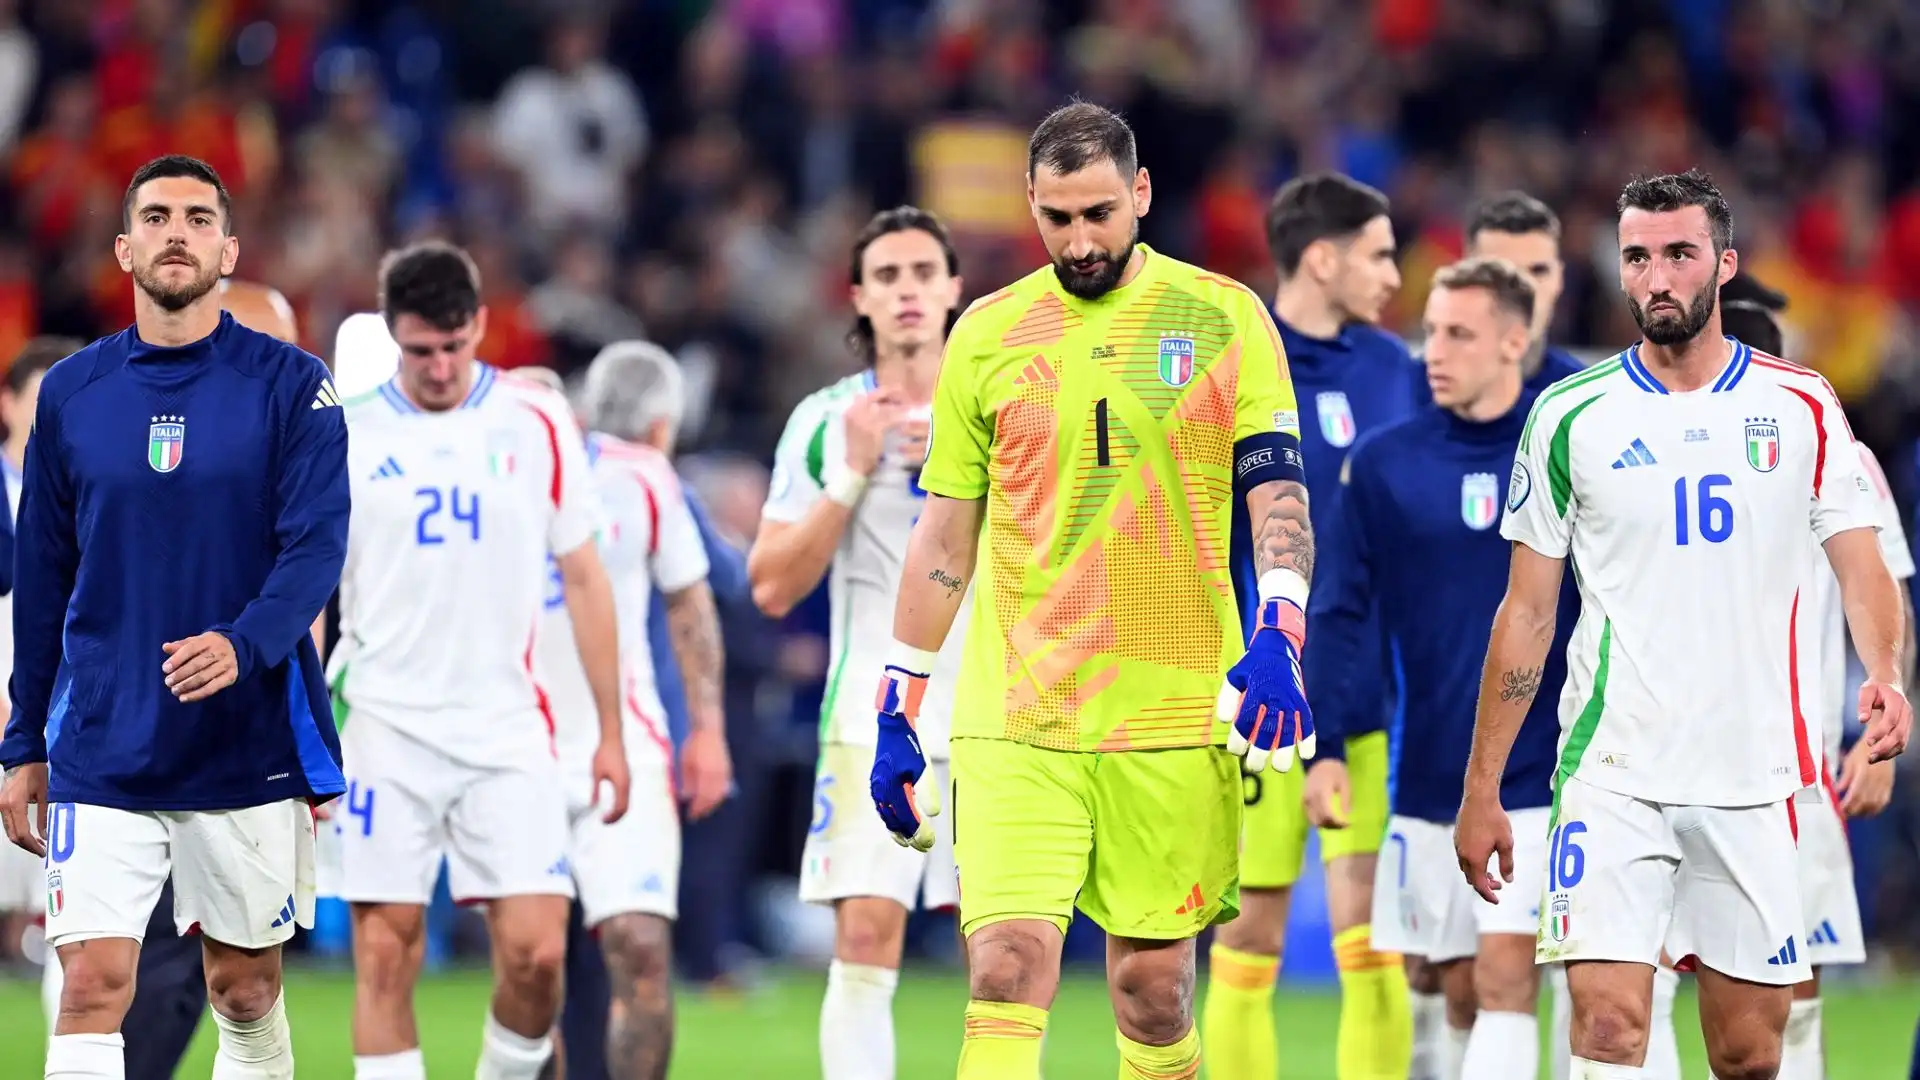 Se l'Italia dovesse perdere contro la Croazia, la qualificazione sarebbe ancora possibile in determinate circostanze